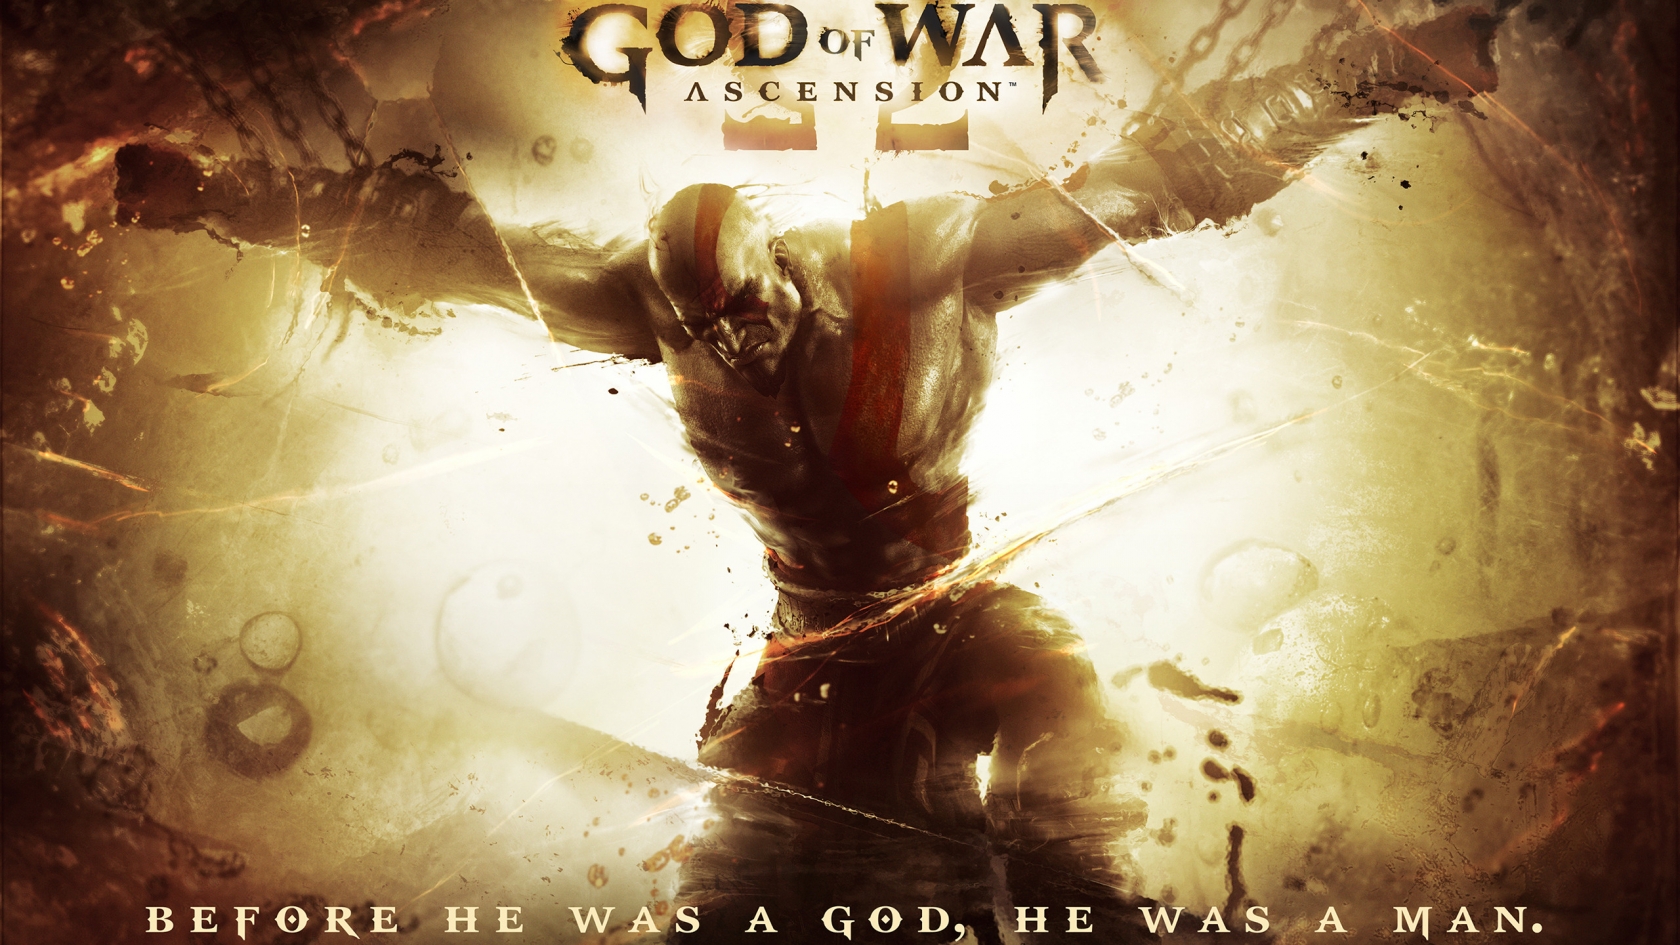 God of War Ascension 2013 for 1680 x 945 HDTV resolution